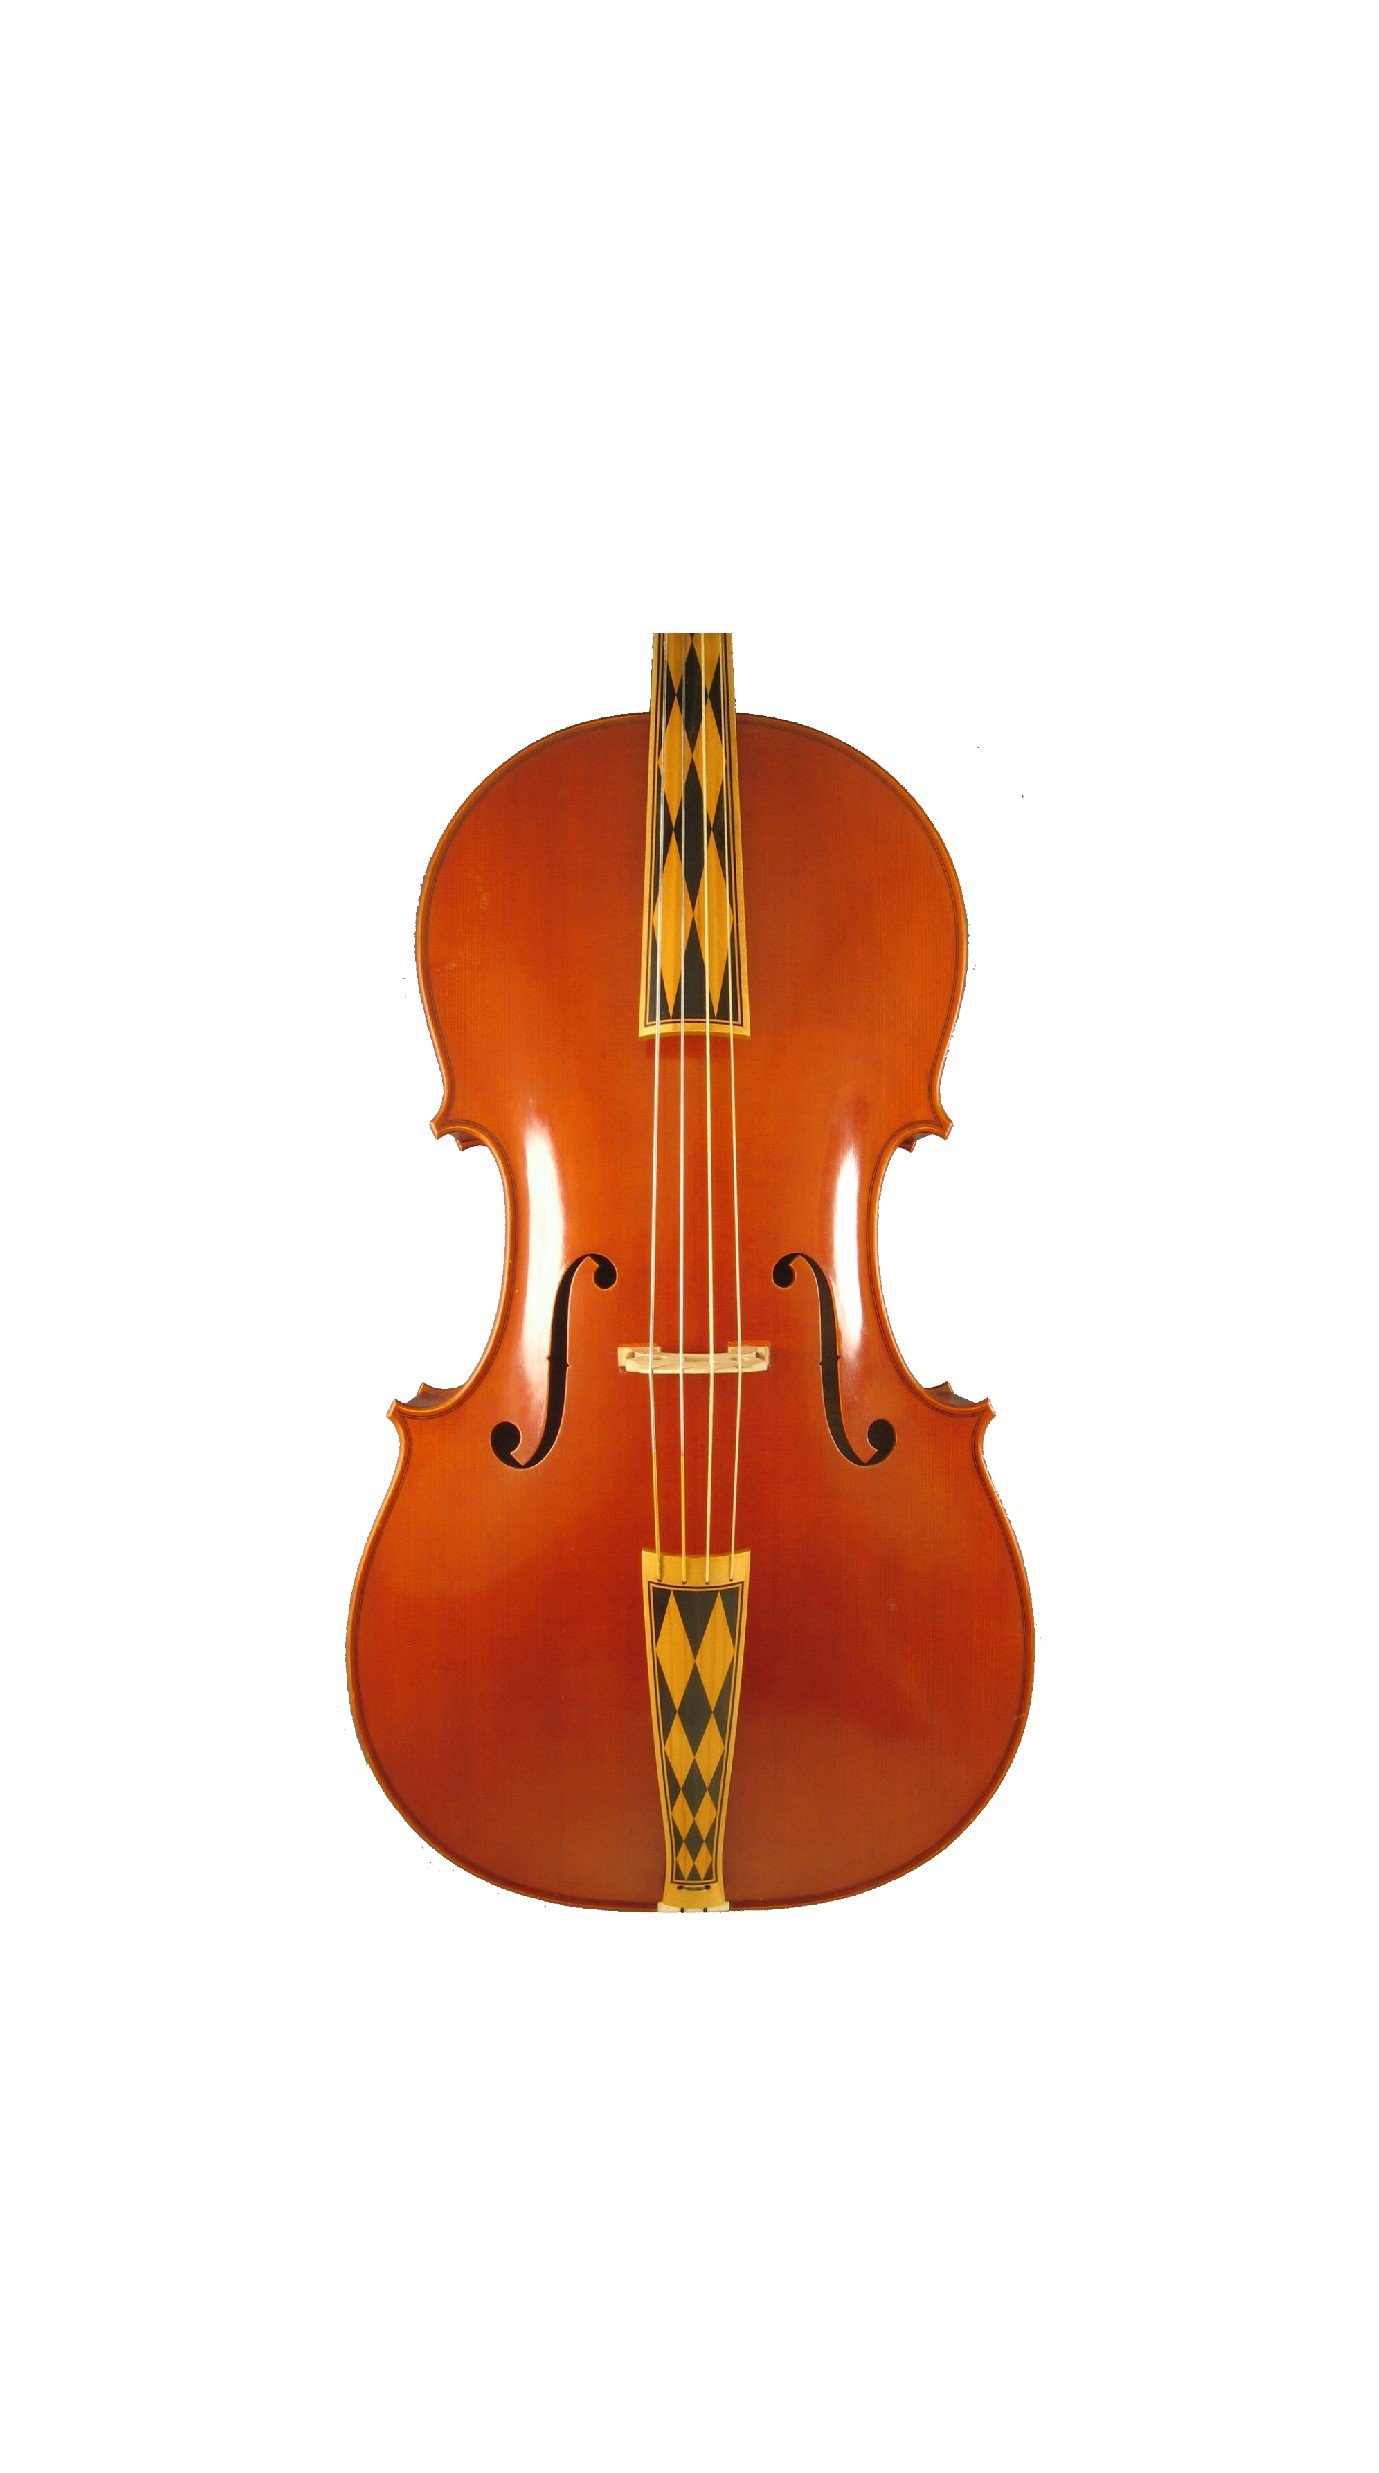 Baroque Cello, W. Bailey SOLD 2005